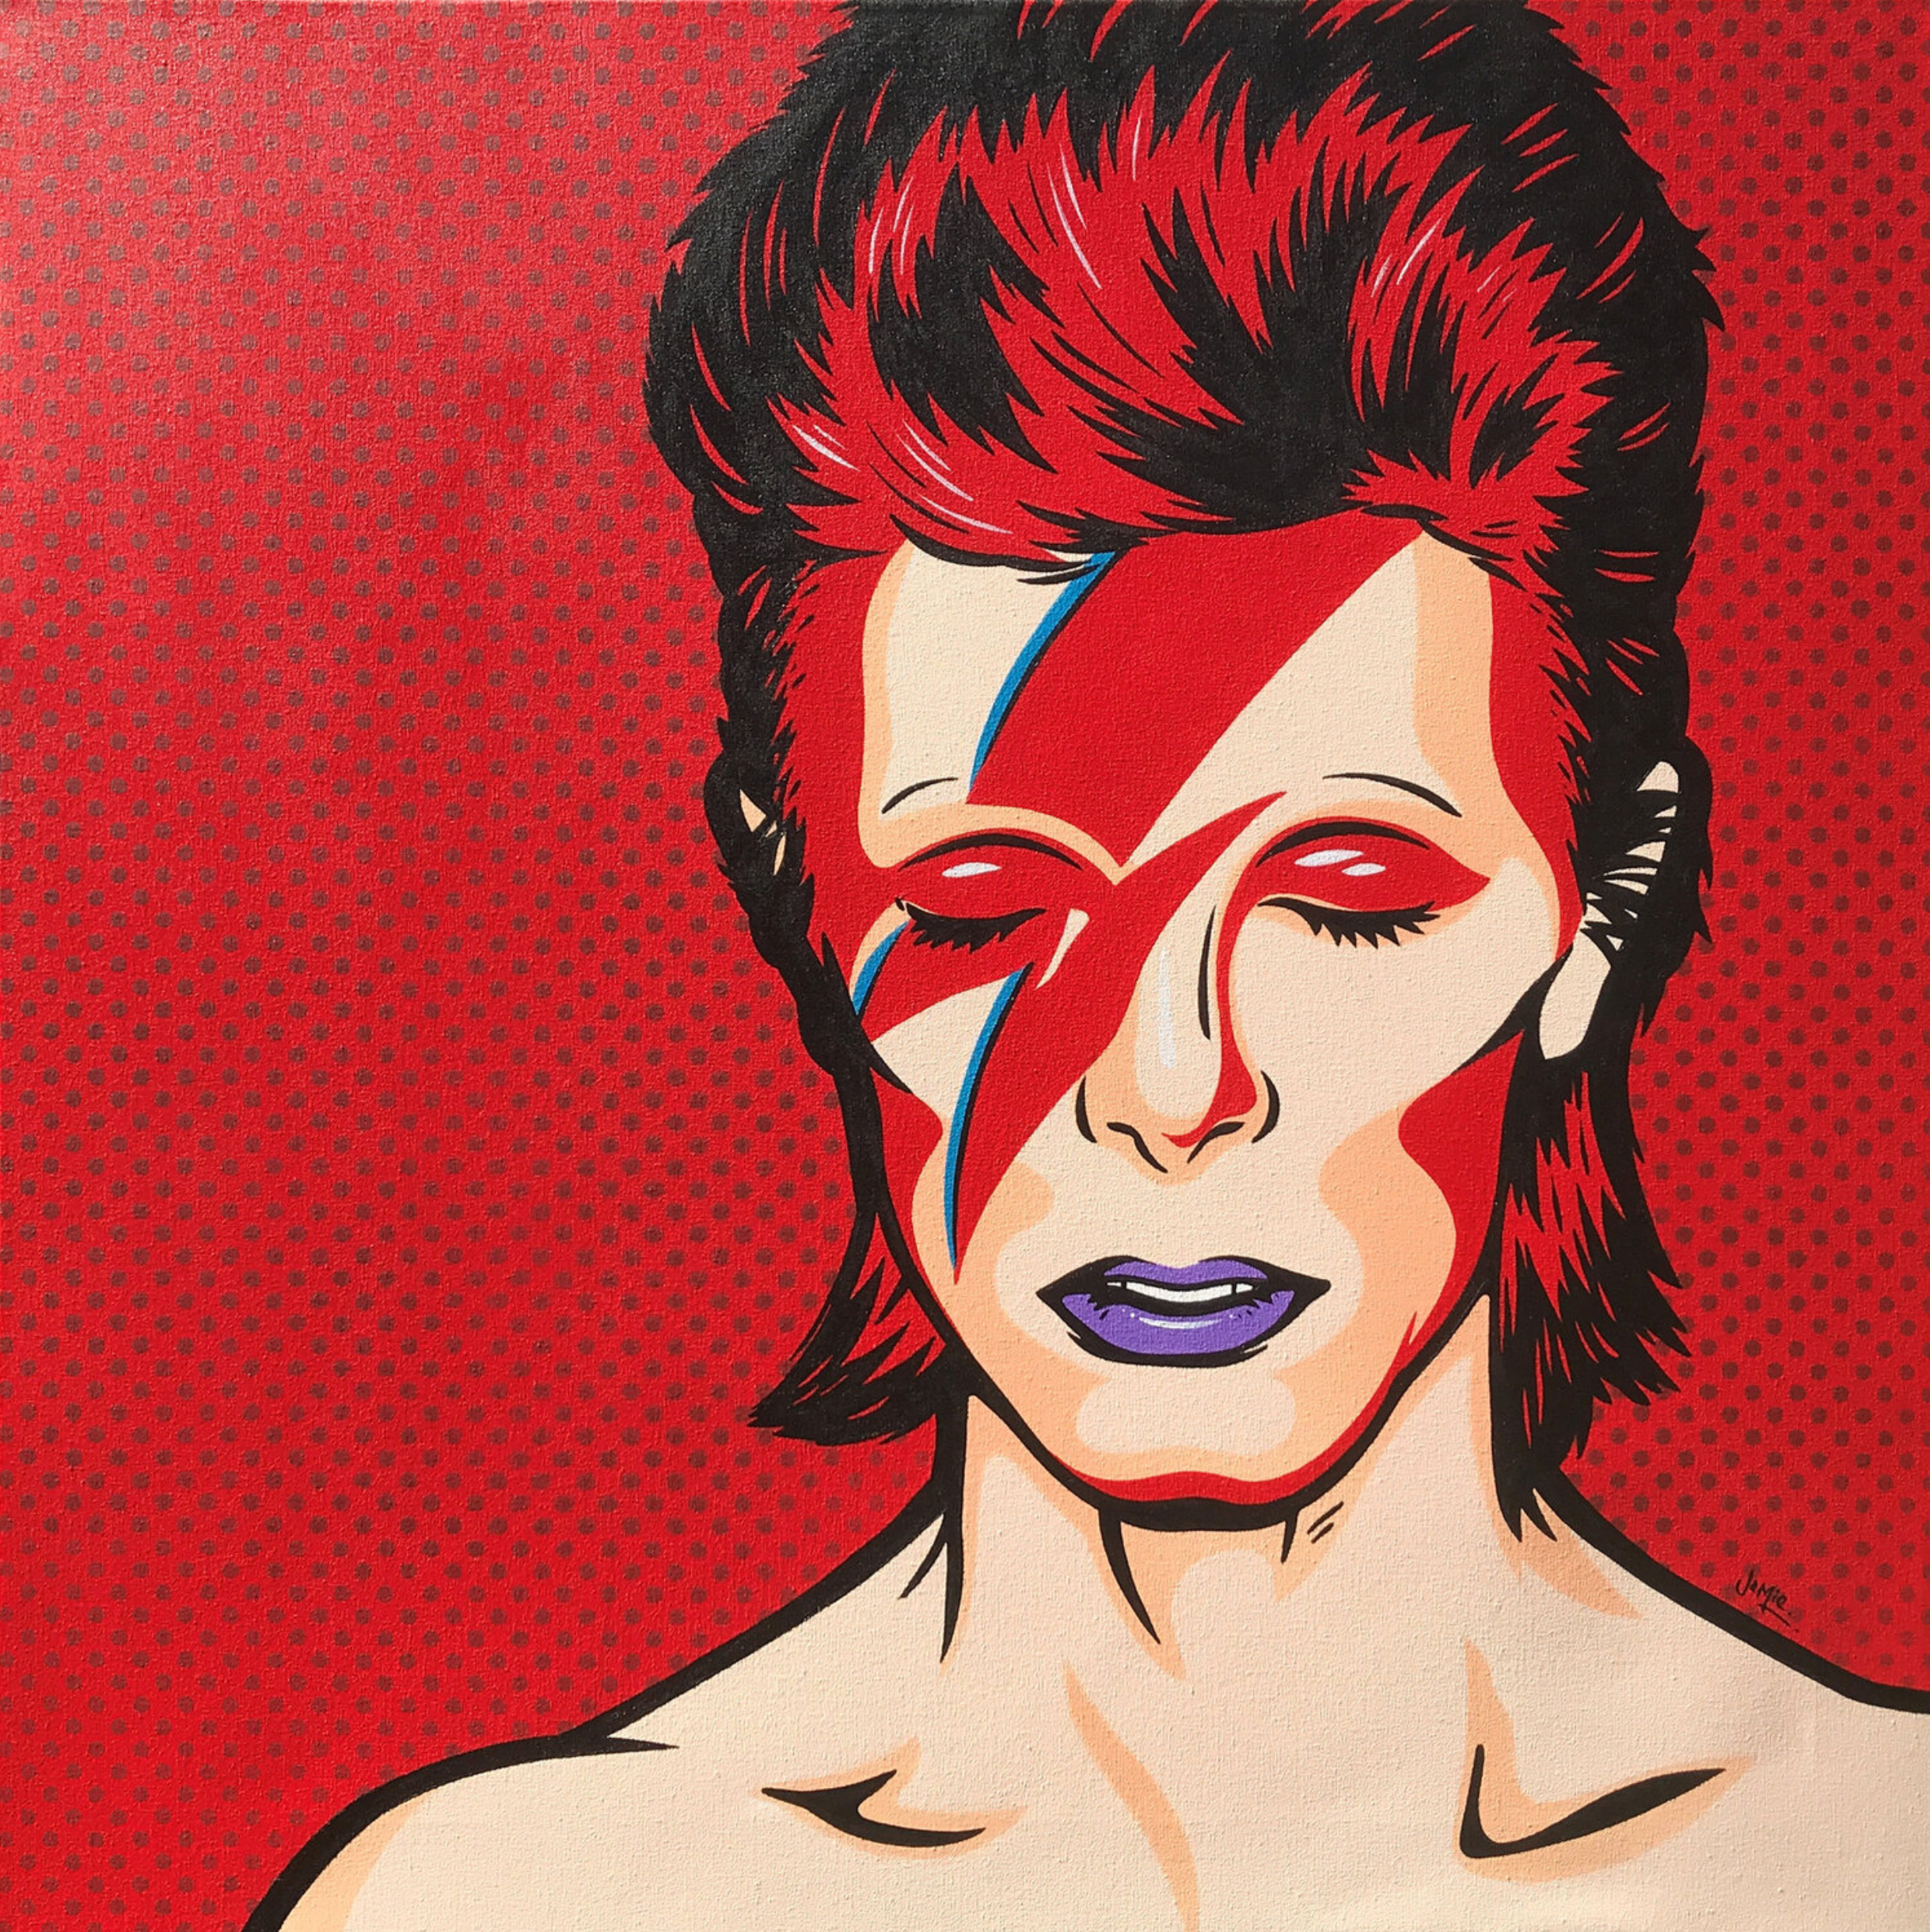 Quadro pop art in stile fumetto di Jamie Lee "Ziggy" con disegno originale, David Bowie come Aladdin Sane su sfondo rosso. Versione pop art dipinta a mano della leggendaria copertina dell'album.